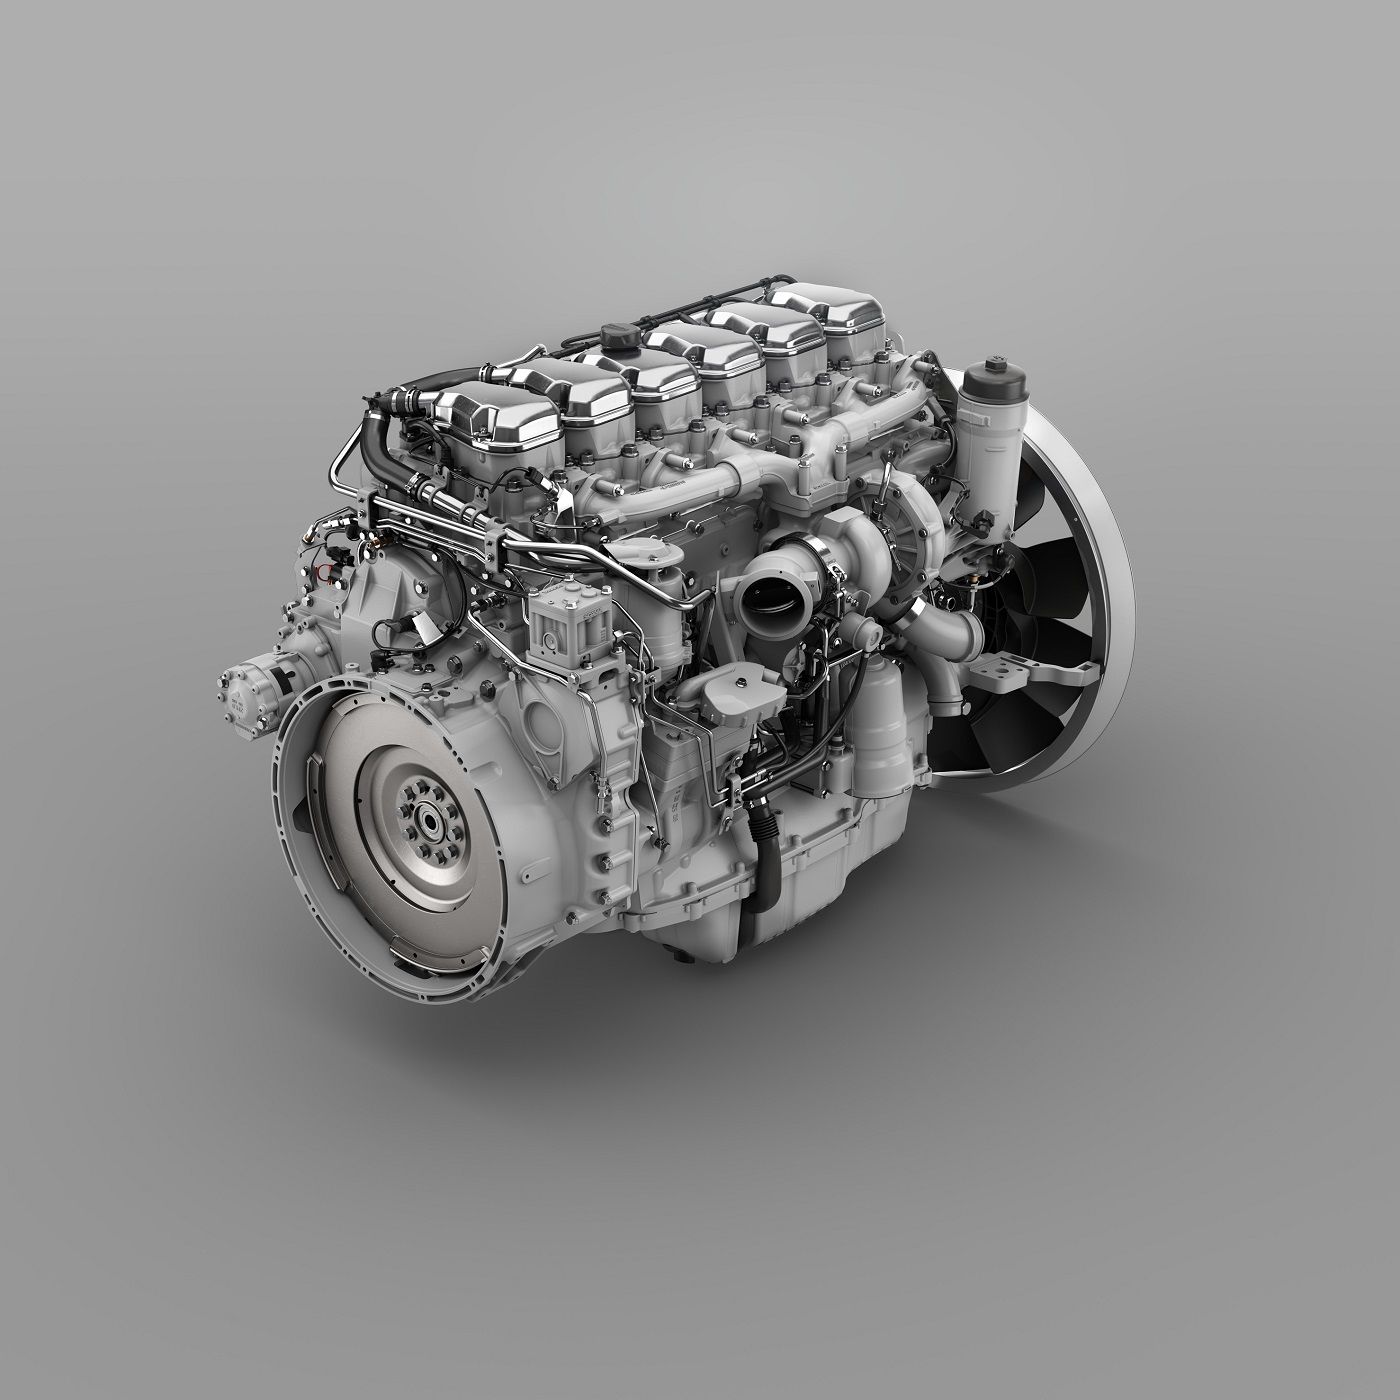 Nuevo motor de Scania de 540 CV